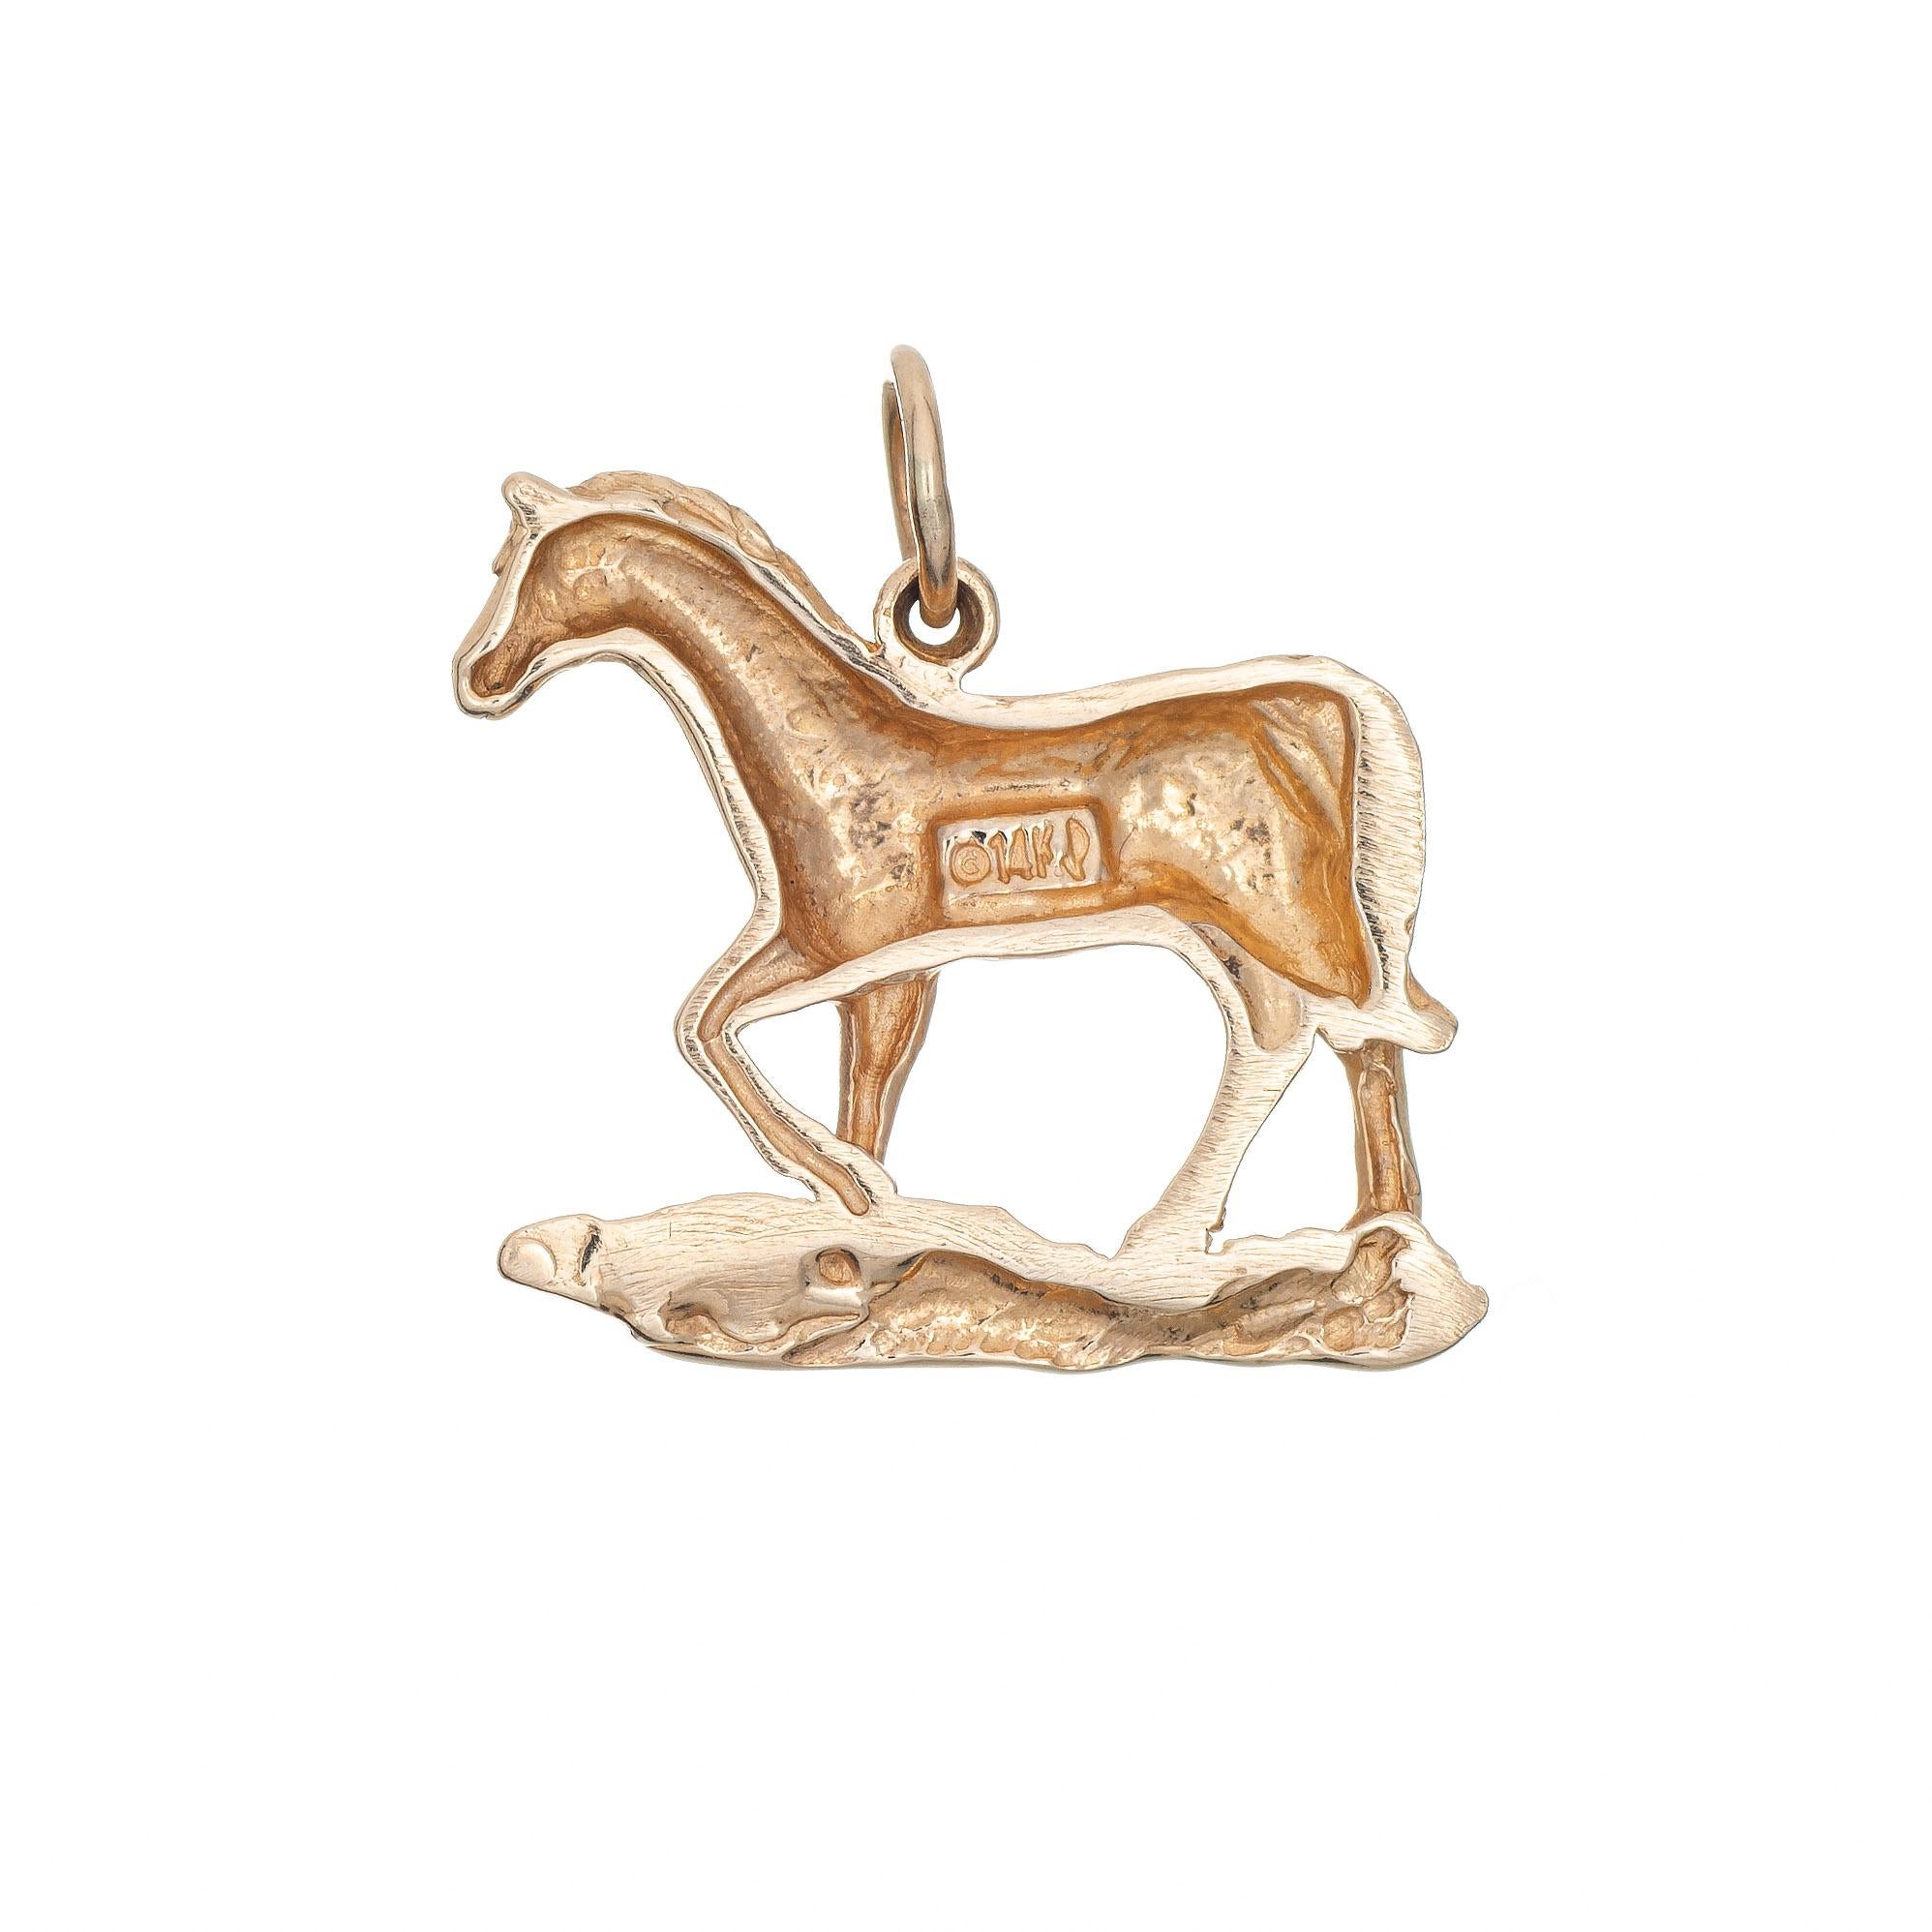 Fein detaillierte Vintage Pferd Charme in 14k Gelbgold gefertigt.  

Das trabende Pferd ist kleiner (3/4 Zoll Durchmesser) und lässt sich gut an einem Armband oder als Anhänger tragen.

Der Charme ist in sehr gutem Zustand und wurde kürzlich